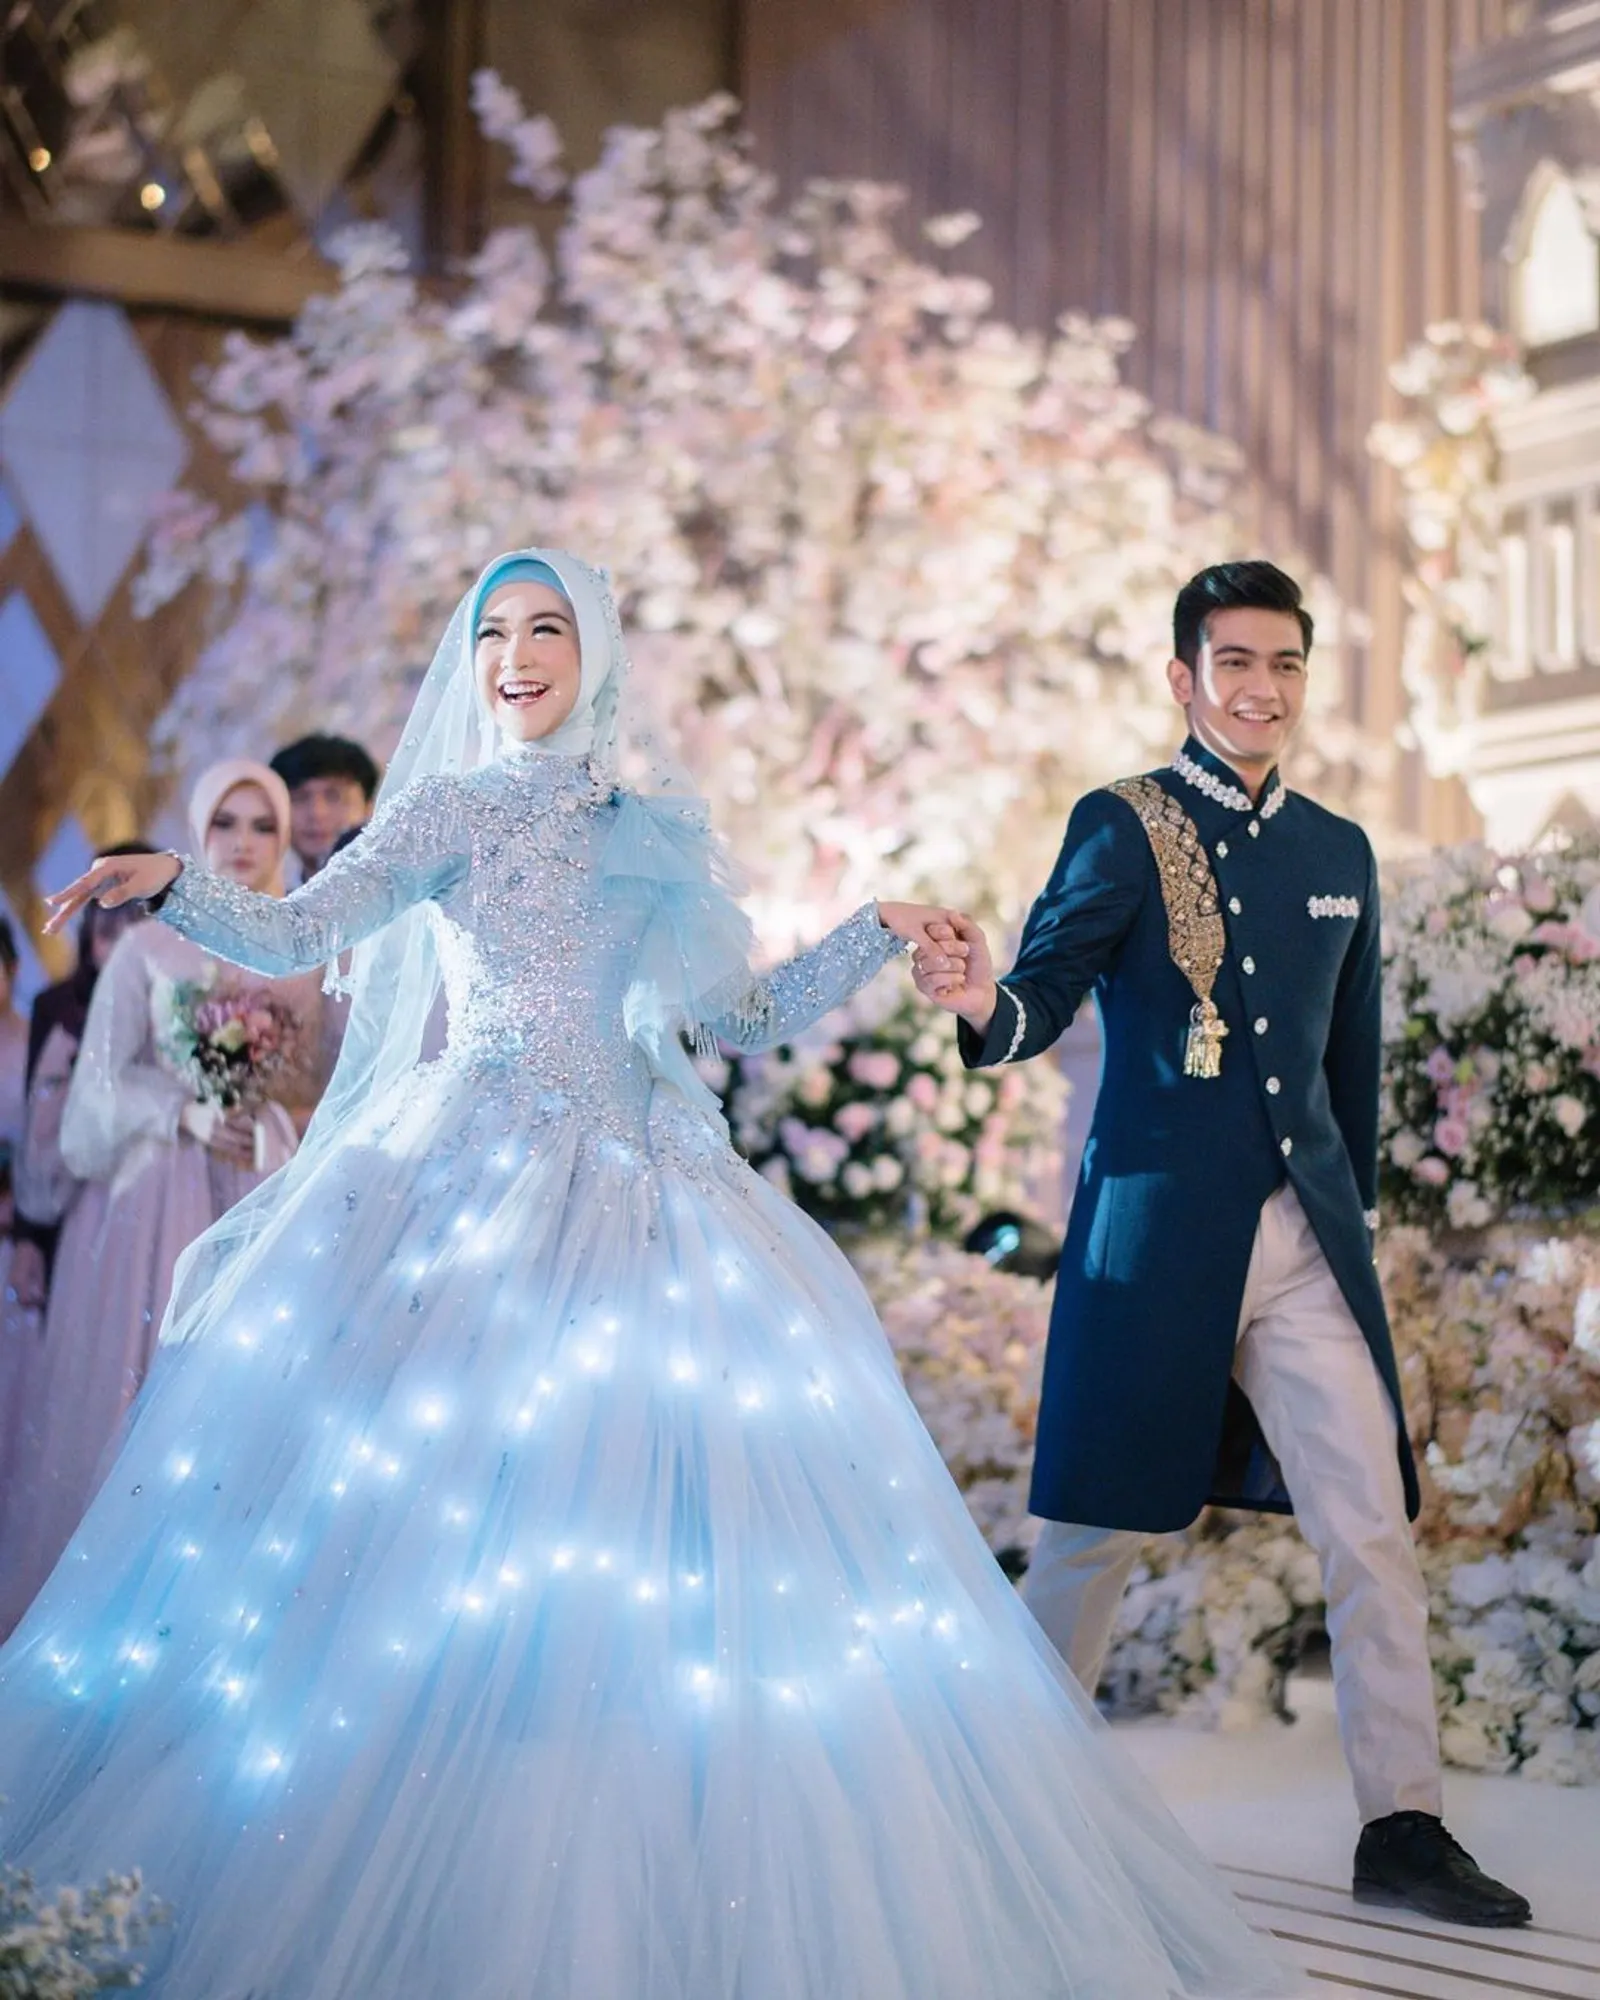 7 Artis Indonesia yang Pakai Gaun Pernikahan Layaknya Putri Dongeng